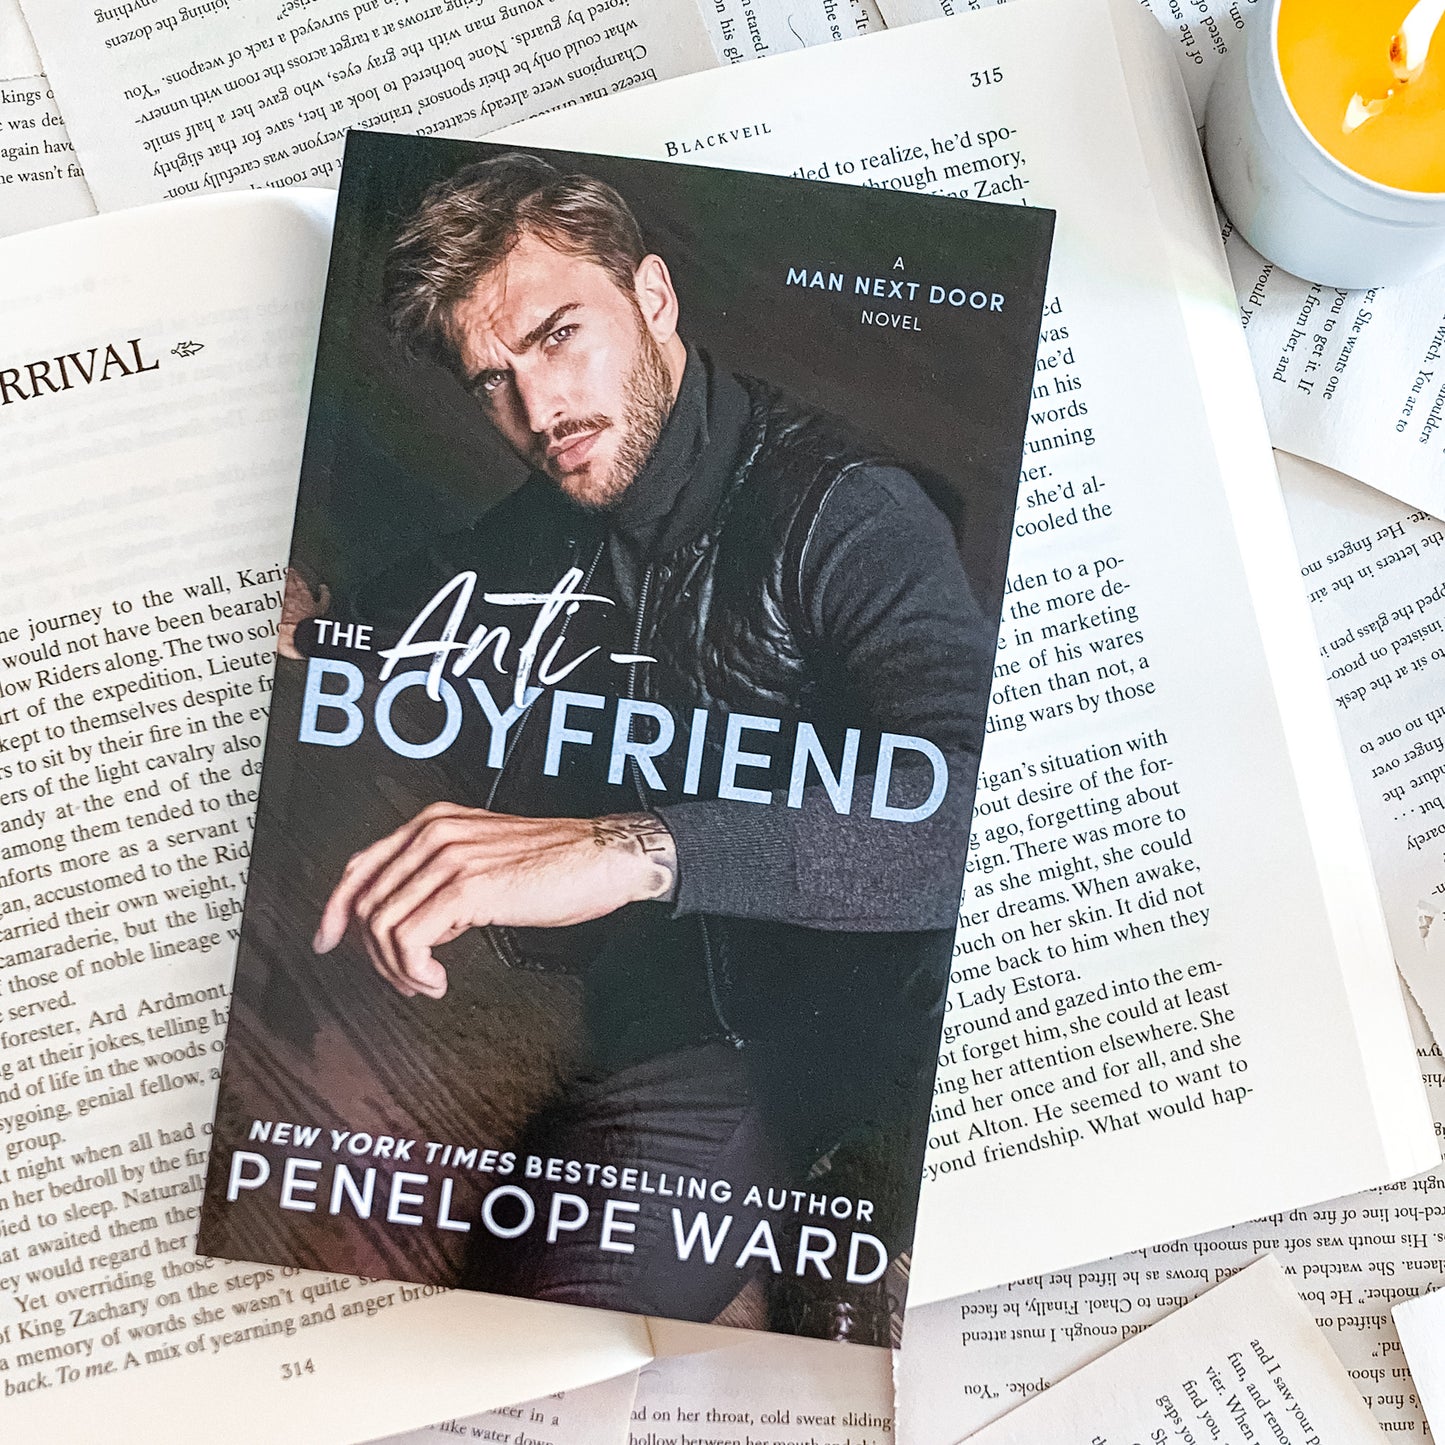 The Anti-Boyfriend by Penelope Ward